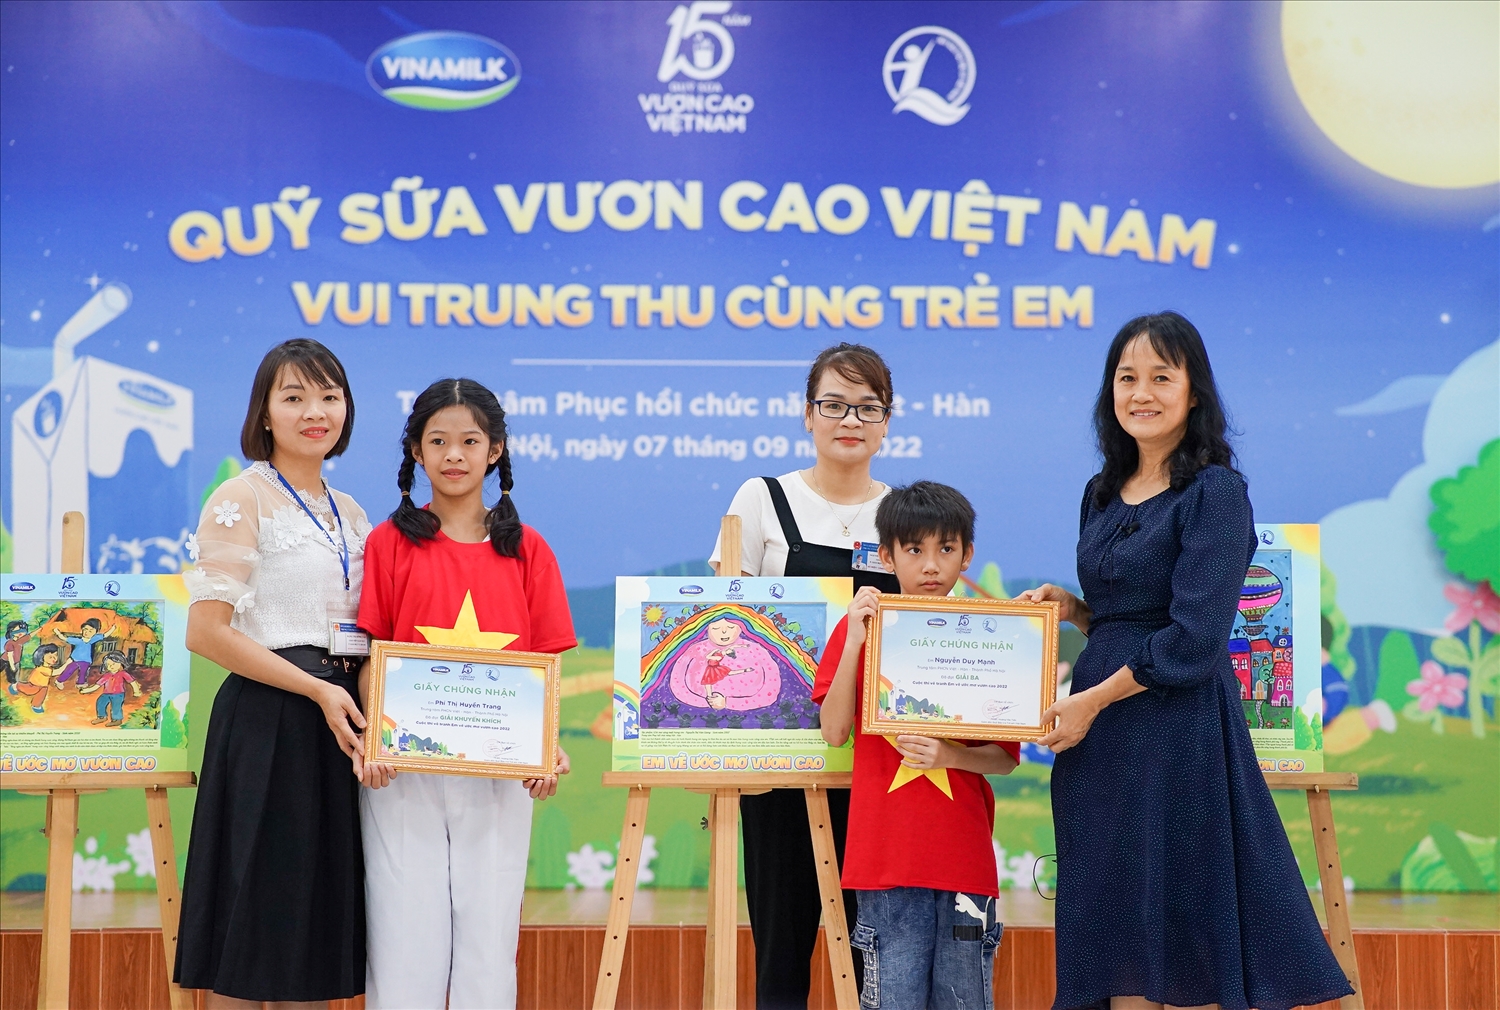 Em Phí Thị Huyền Trang (giải khuyến khích) và Nguyễn Duy Mạnh (giải ba) nhận quà từ đại diện công ty Vinamilk